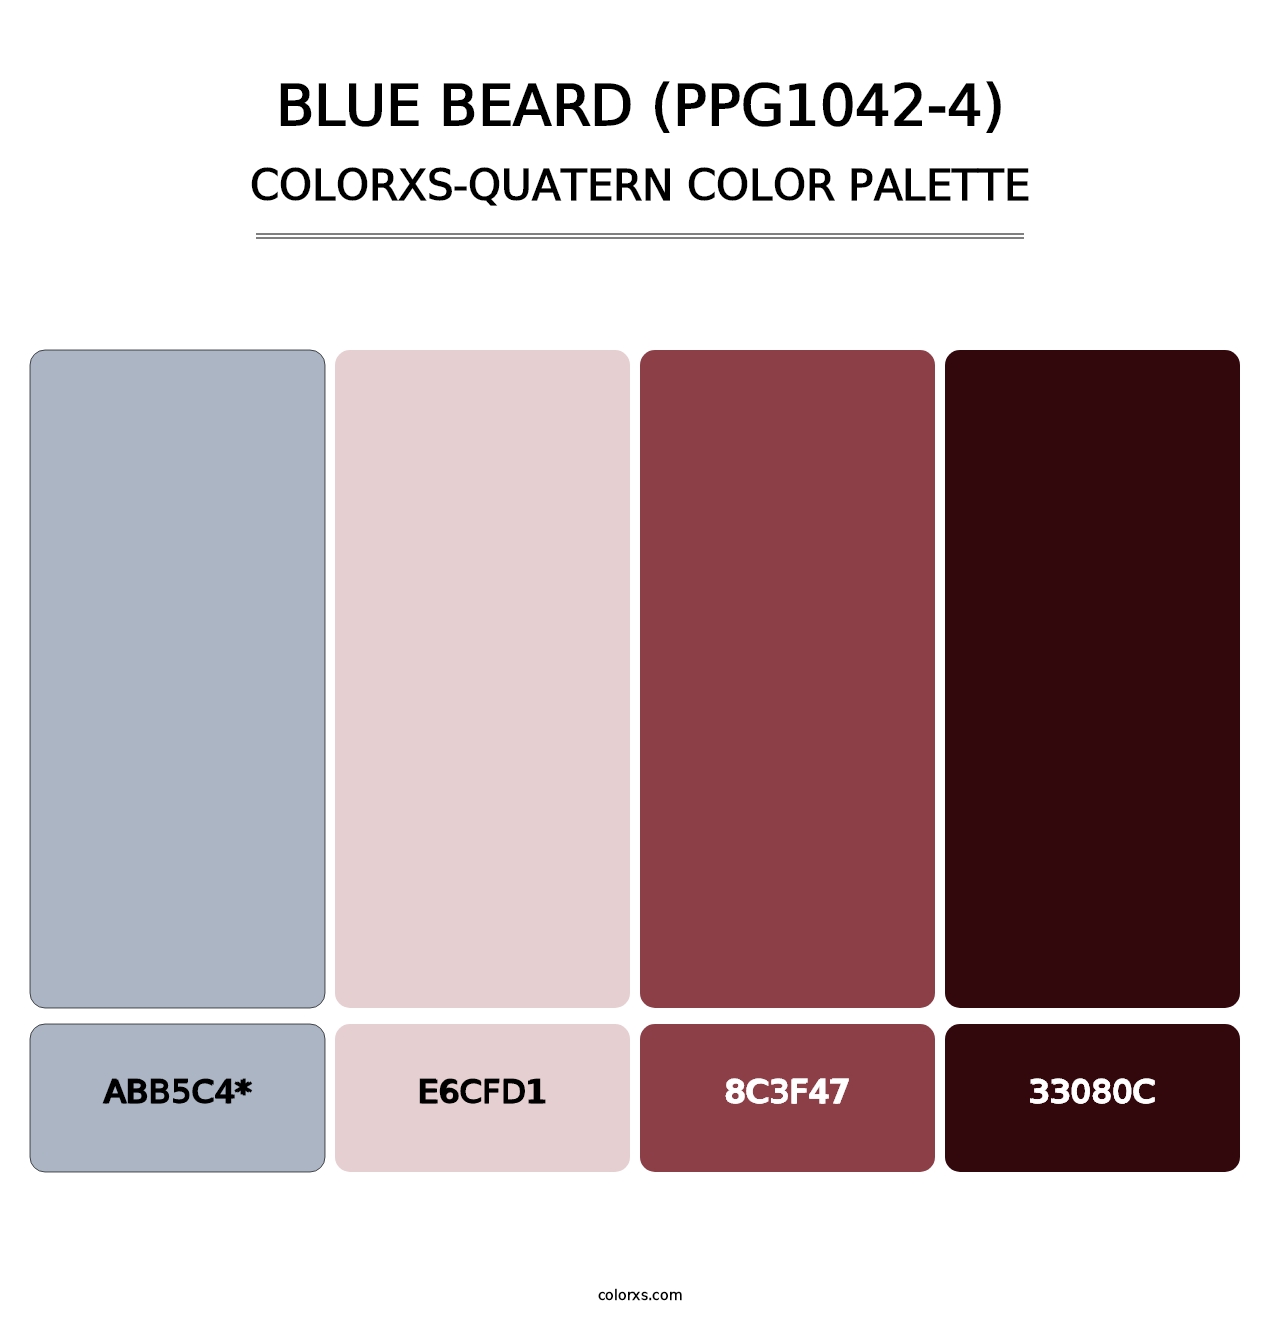 Blue Beard (PPG1042-4) - Colorxs Quatern Palette